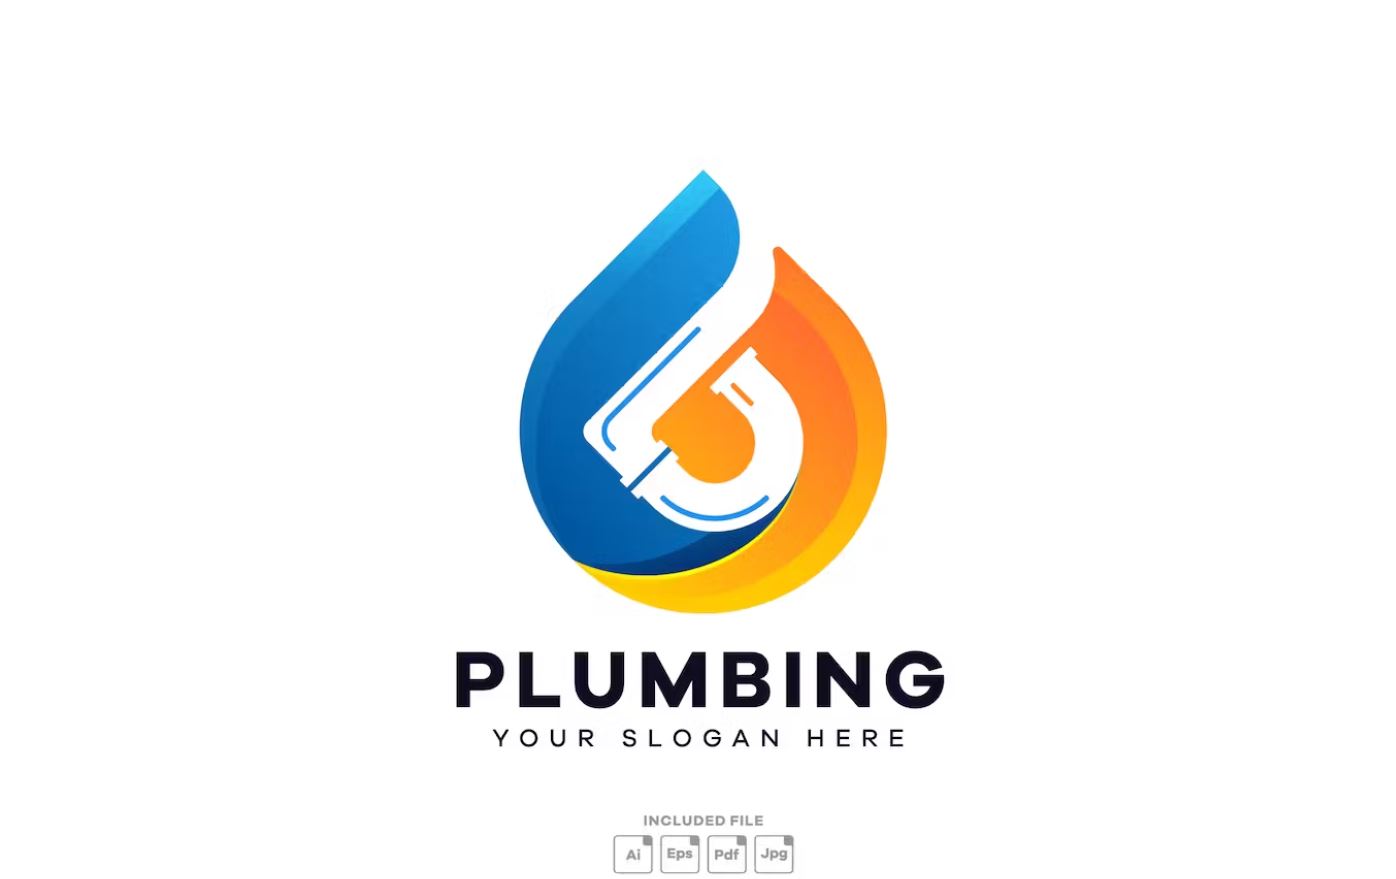 Plumbing-Services-Logo-modern